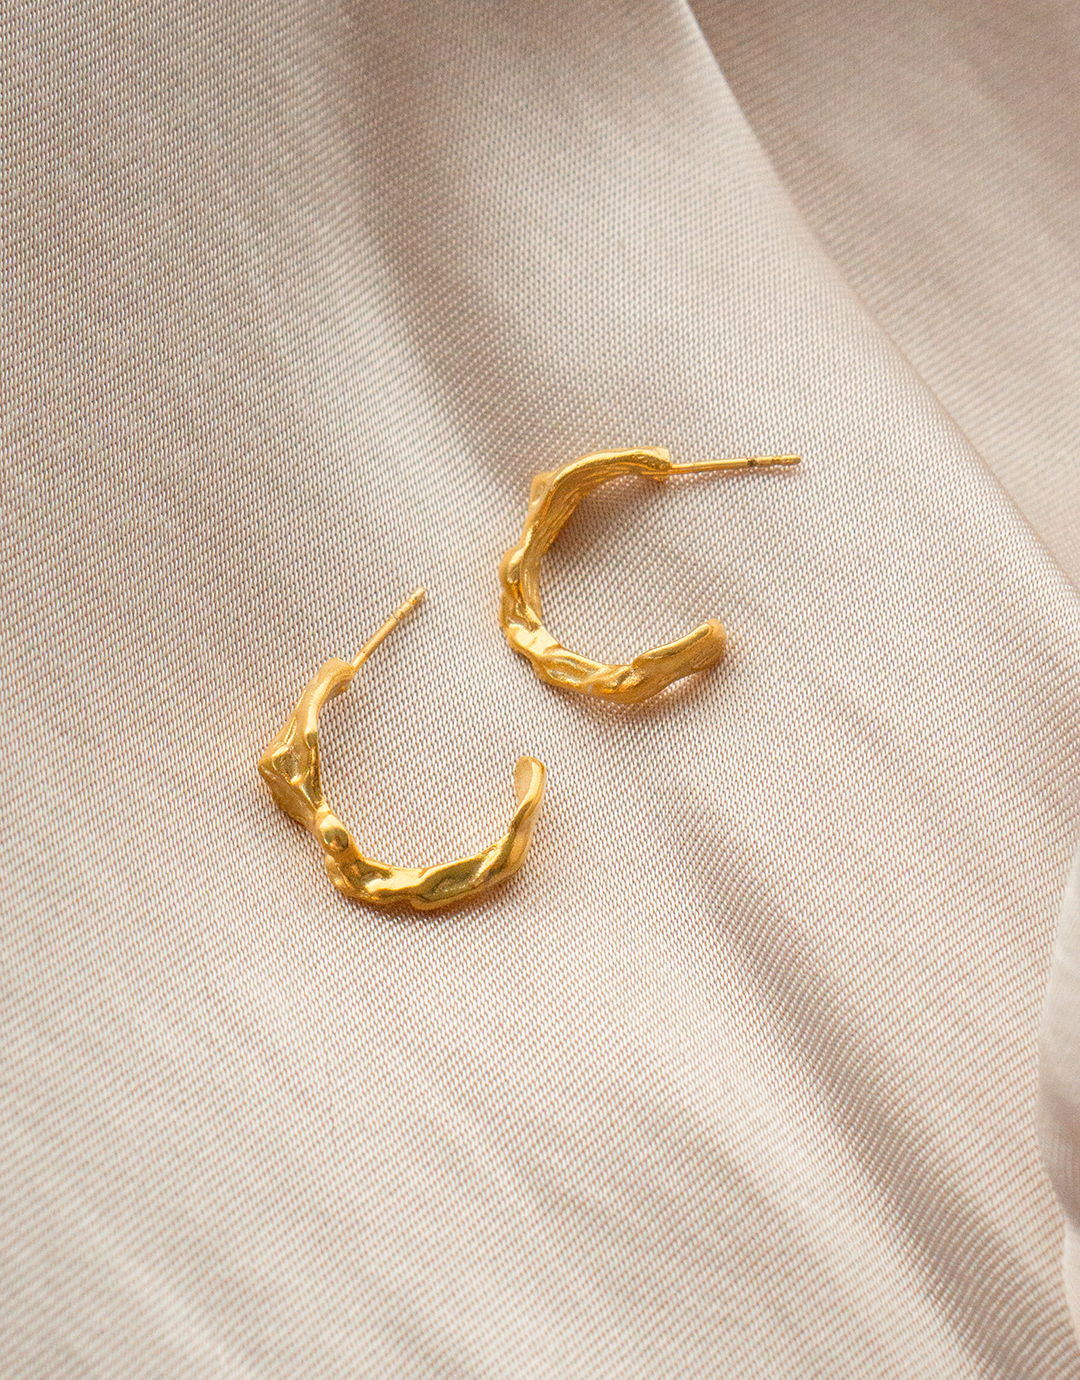 Billede af Sienna - Guld øreringe